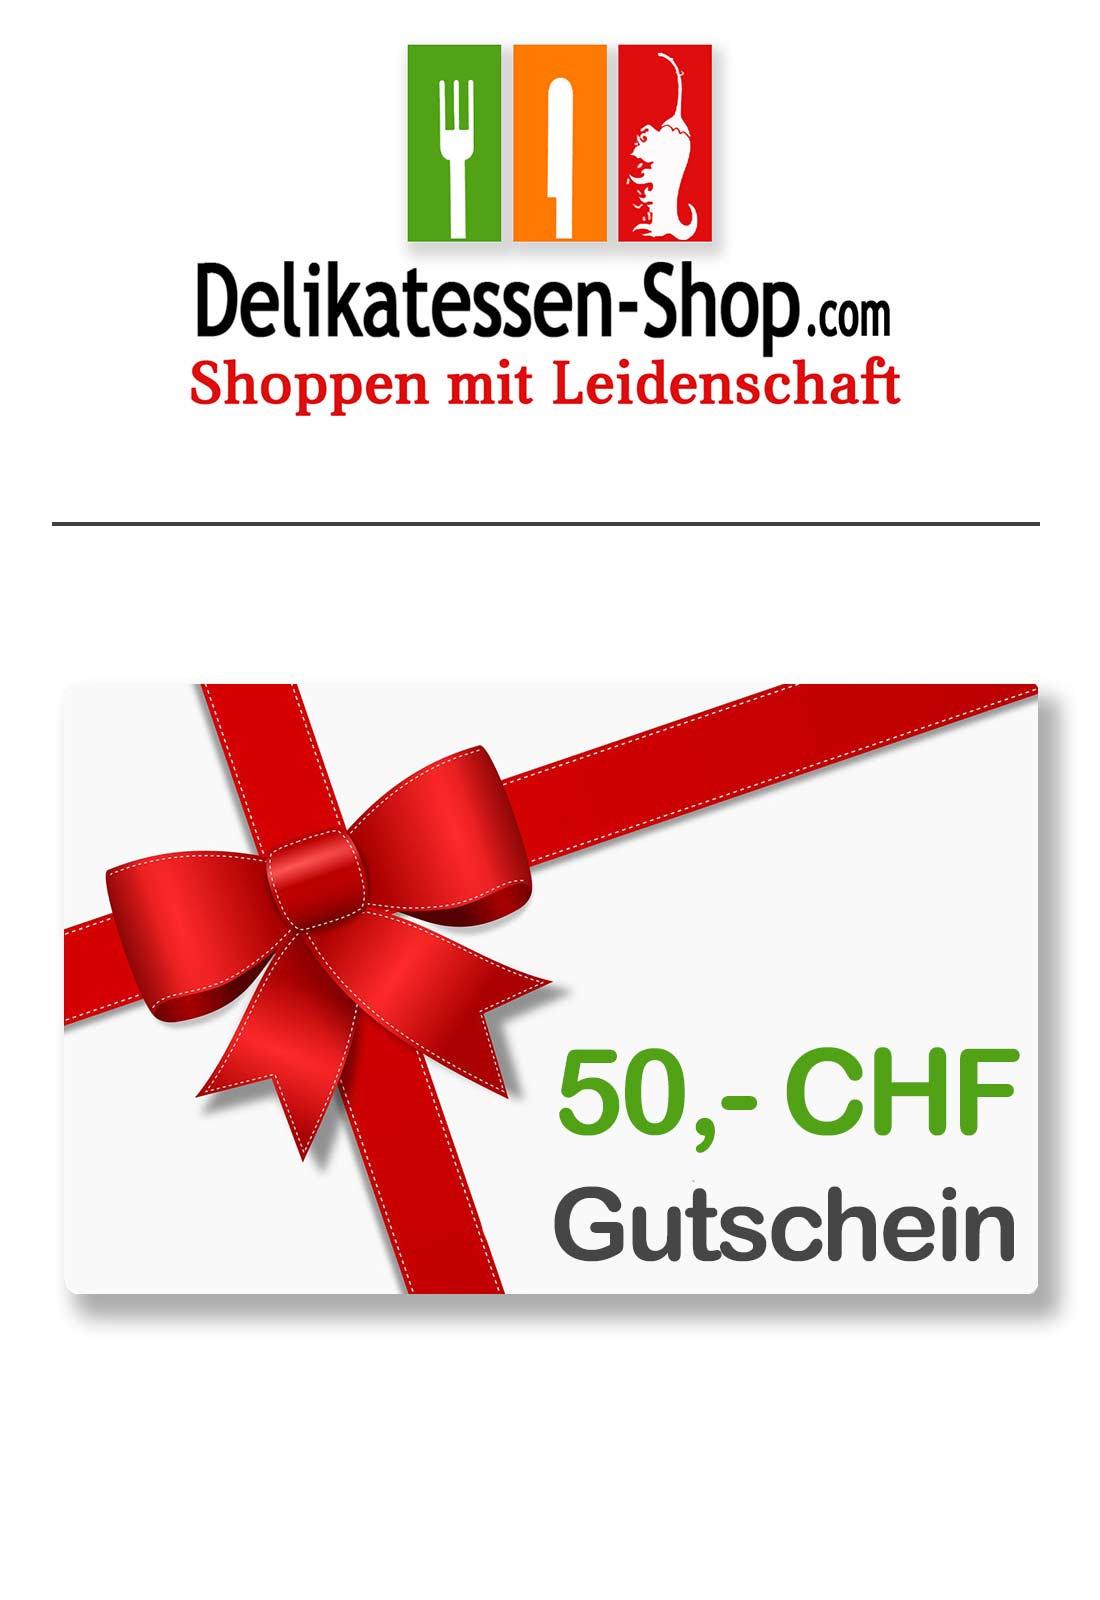 Delikatessen-Shop.com - Gutschein 50 CHF